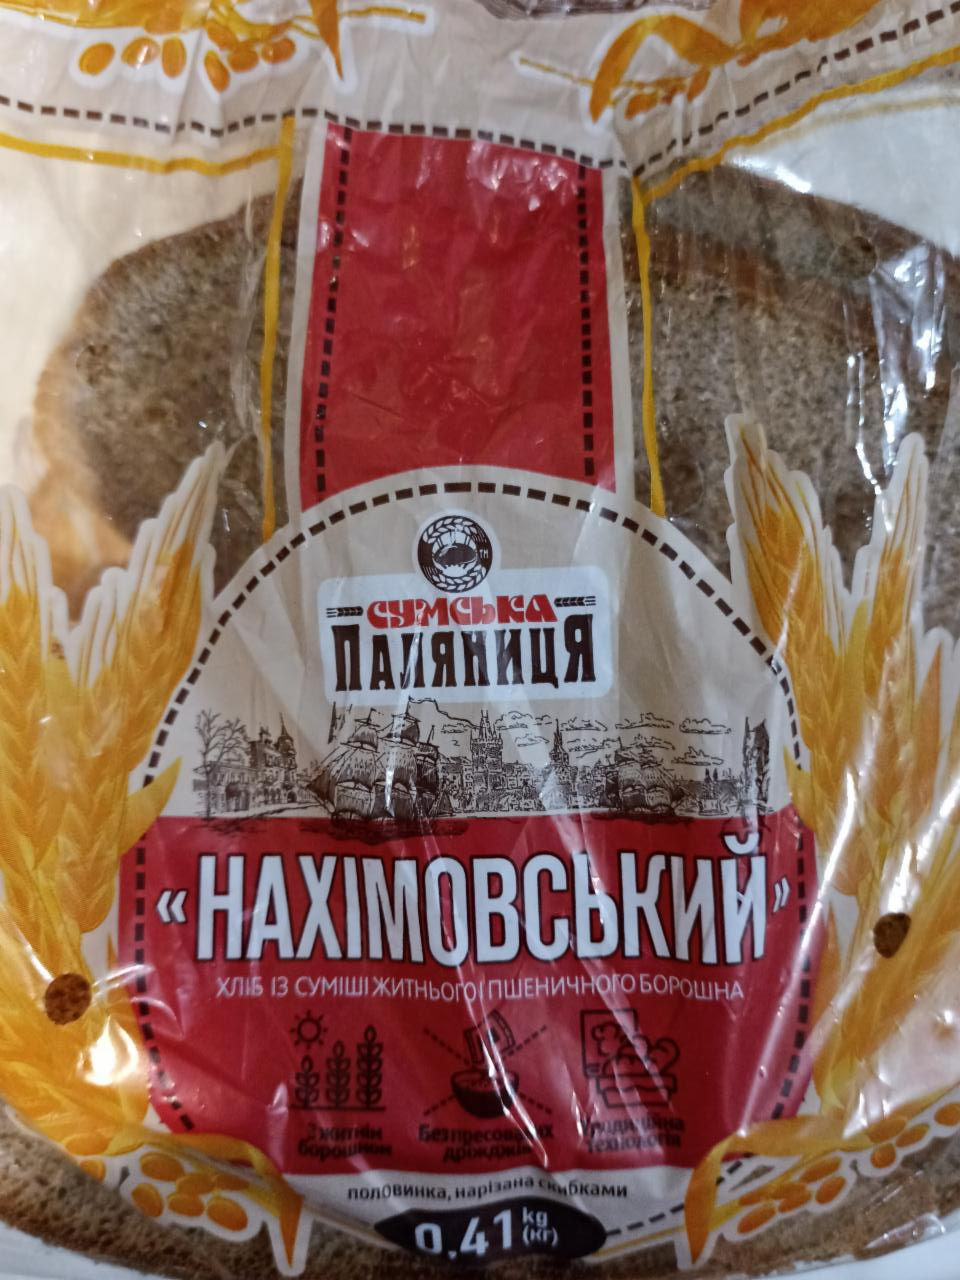 Фото - Хлеб из смеси ржаной пшеничной муки Нахимовский Сумська паляниця